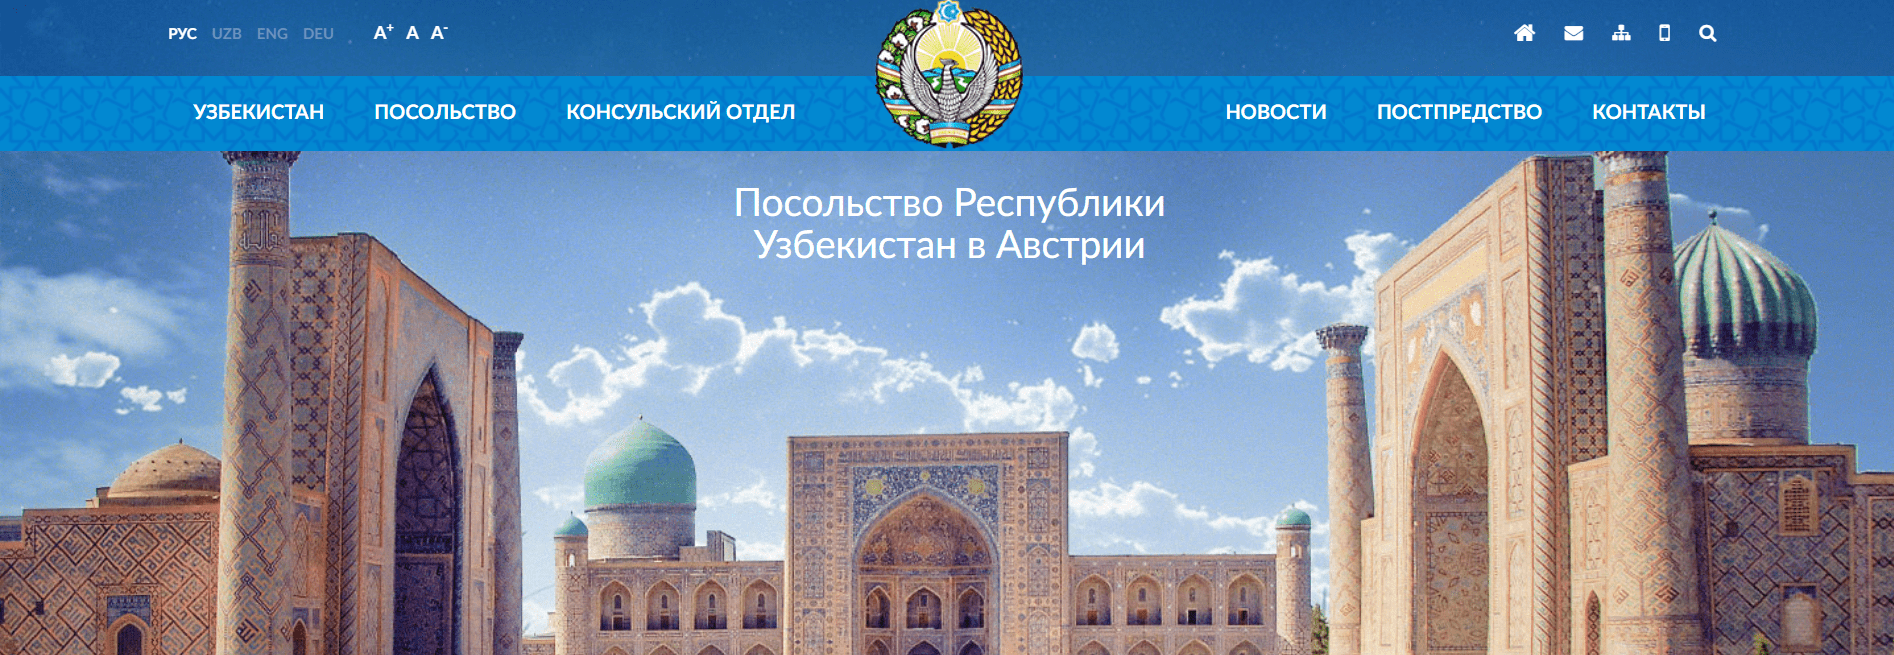 Посольство Республики Узбекистан в Австрии (usbekistan.at) - официальный сайт